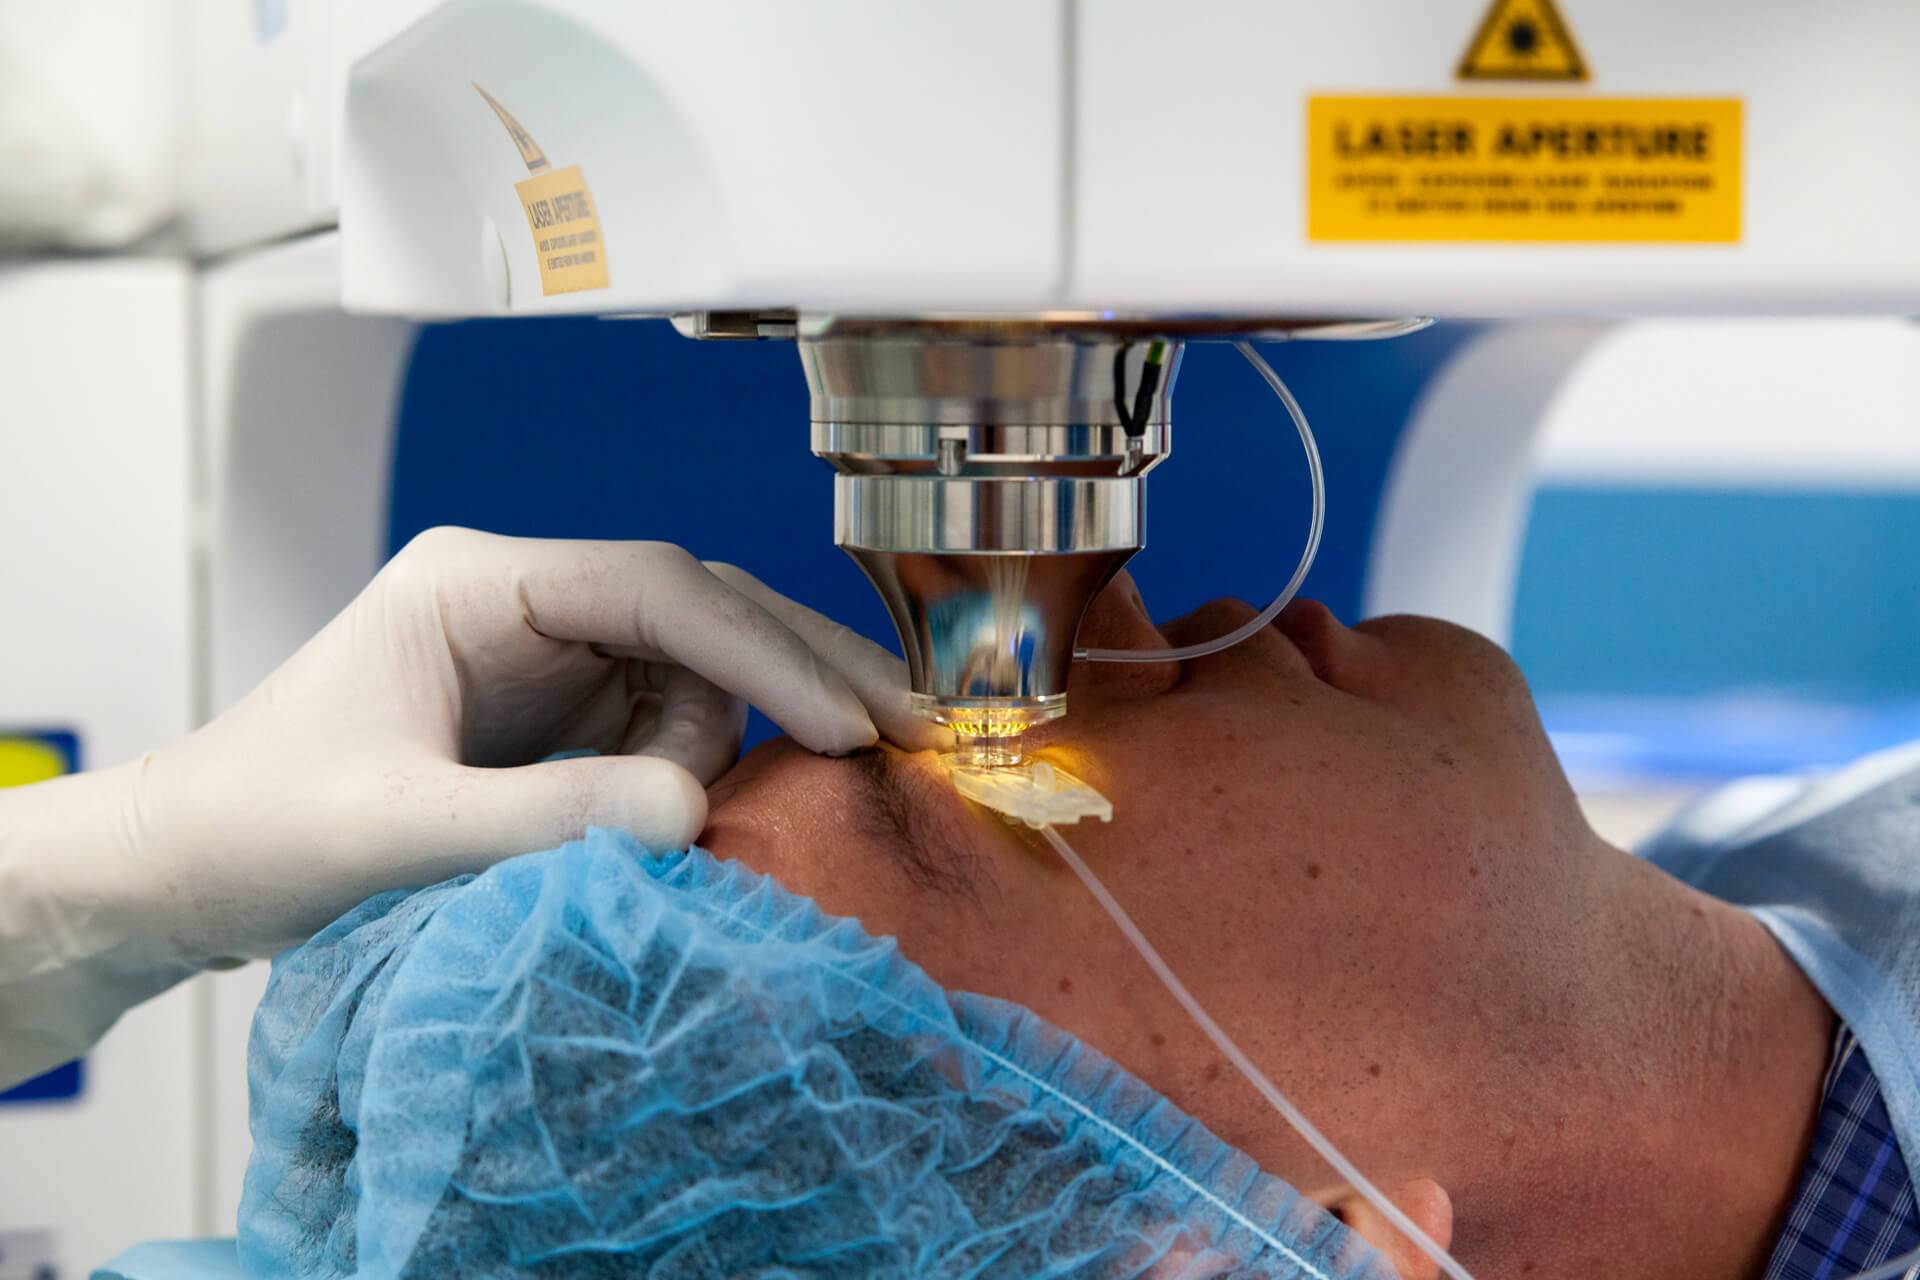 Лечение прогрессирующей миопии (близорукости) – офтальмологическая клиника новый взгляд